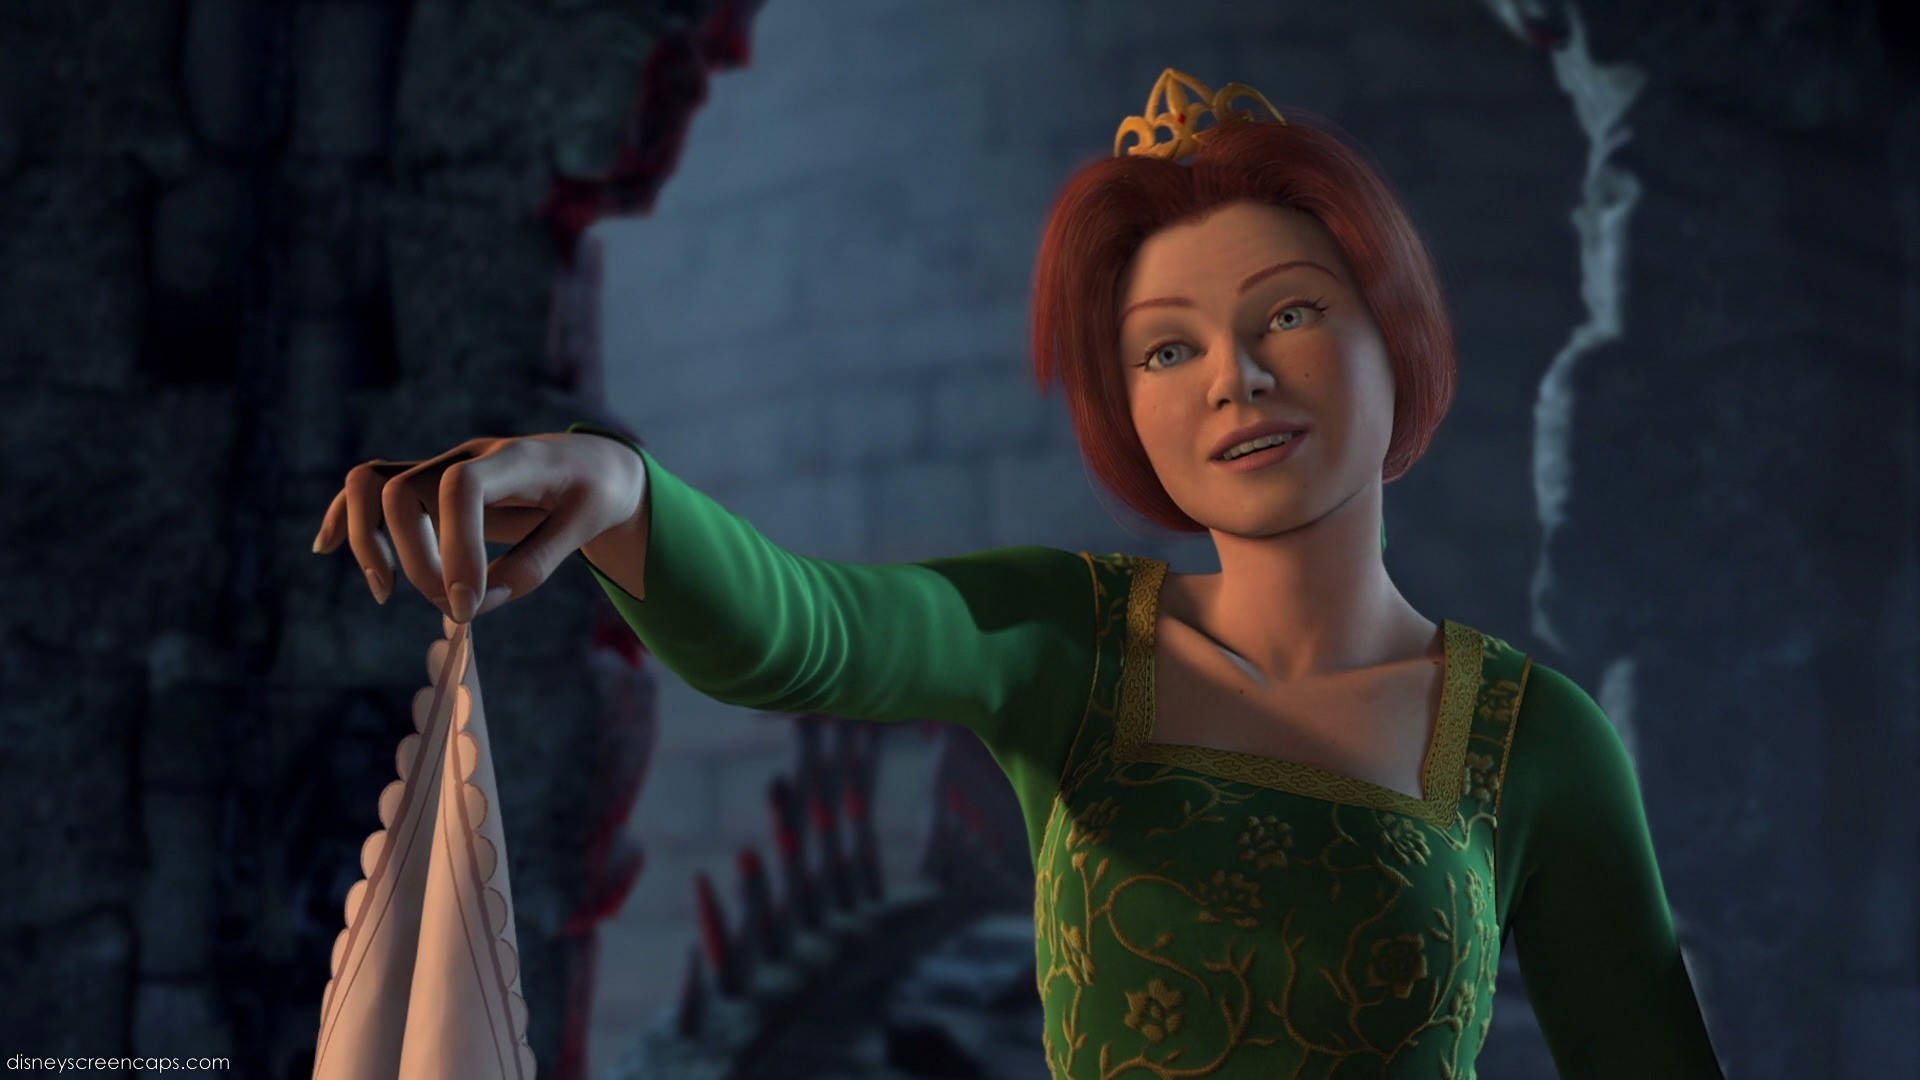 Shrek4k: Prinzessin Fiona, Die Ein Tuch Hält. Wallpaper